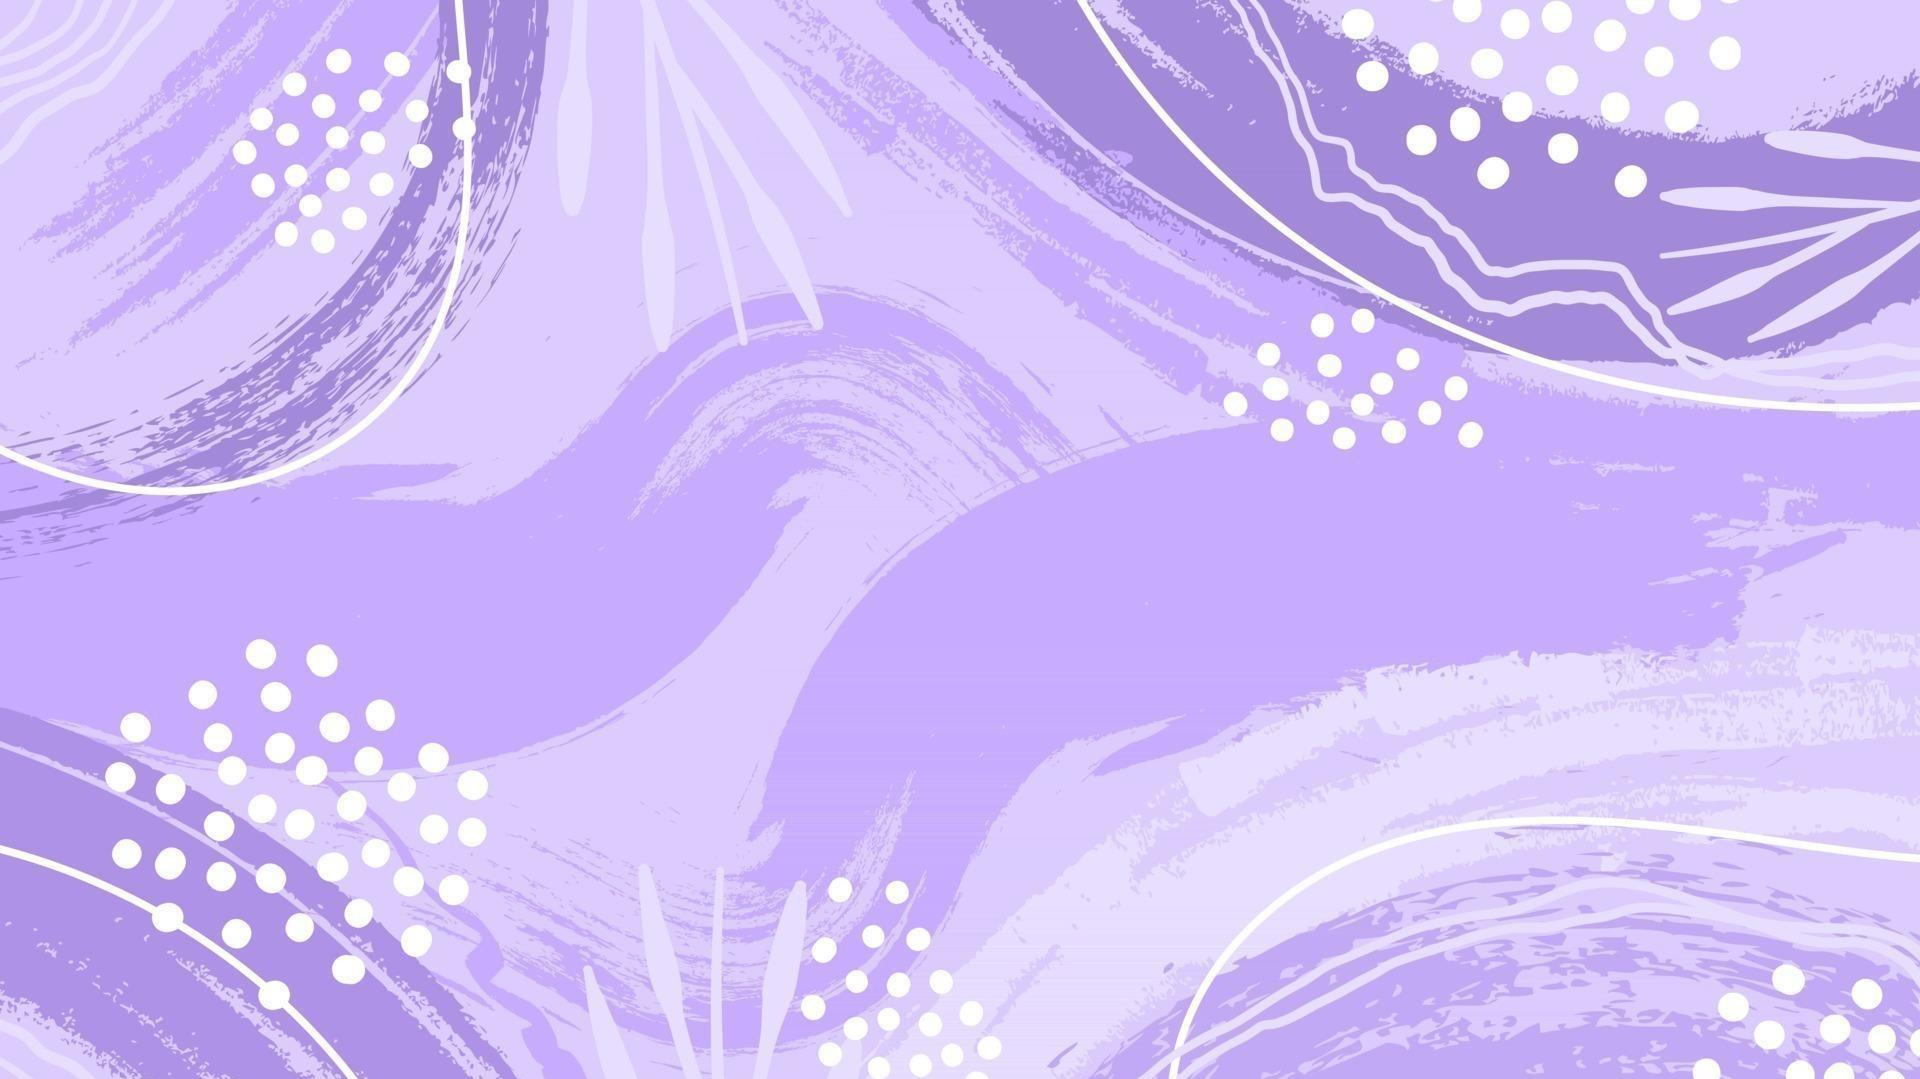 17+] Pastel Purple Laptop Wallpapers - WallpaperSafari